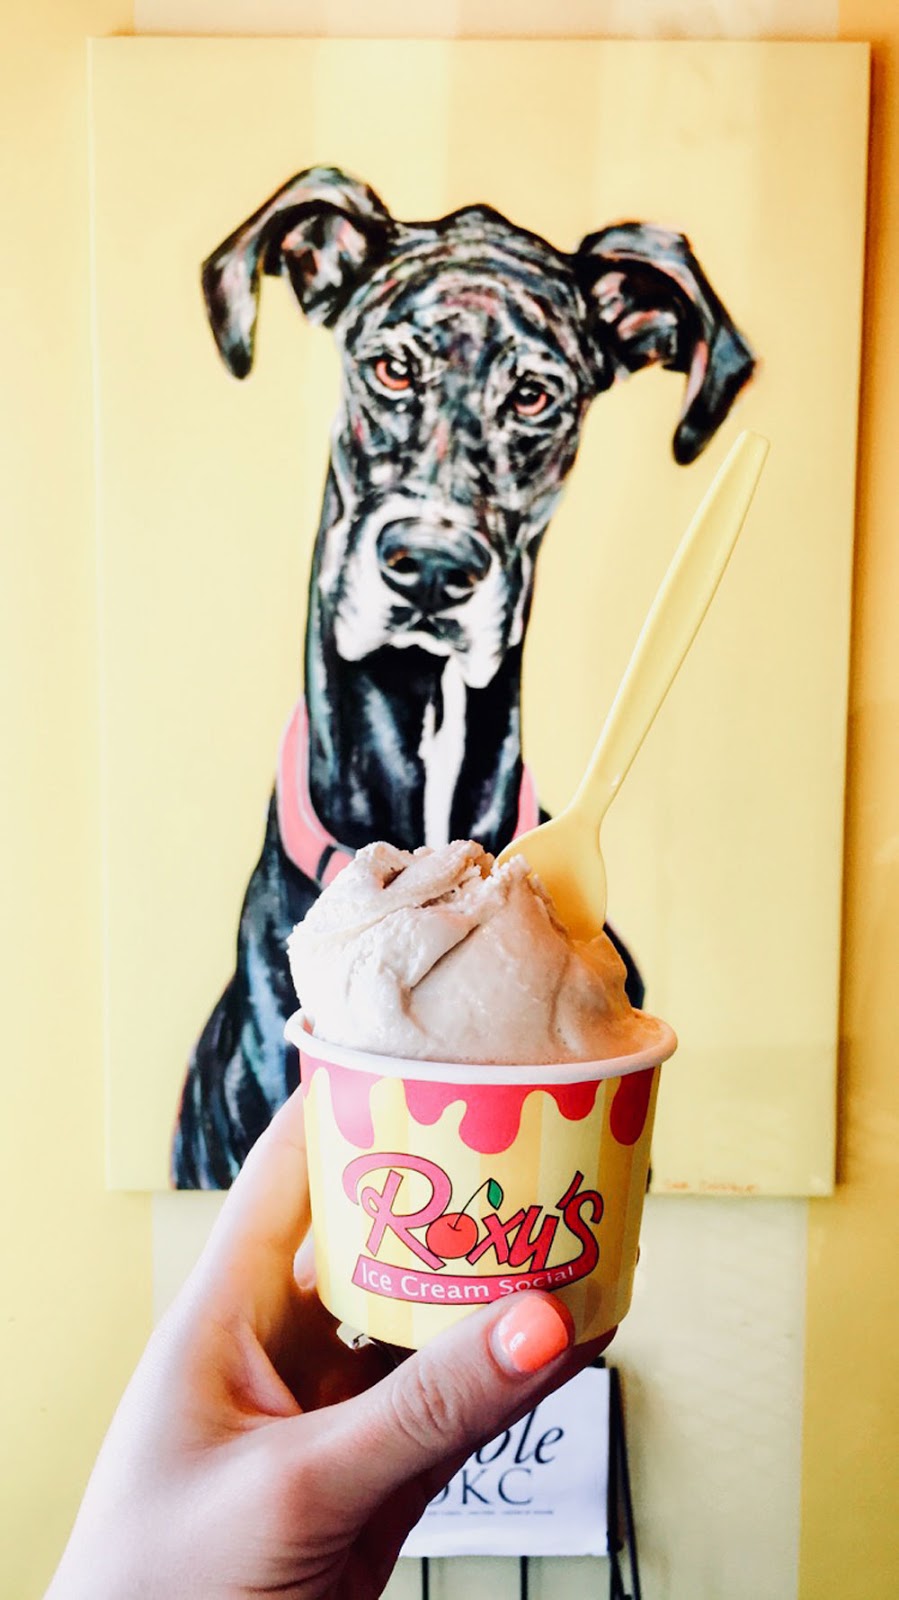 Roxy's Ice Cream is the best ice cream in Oklahoma! 